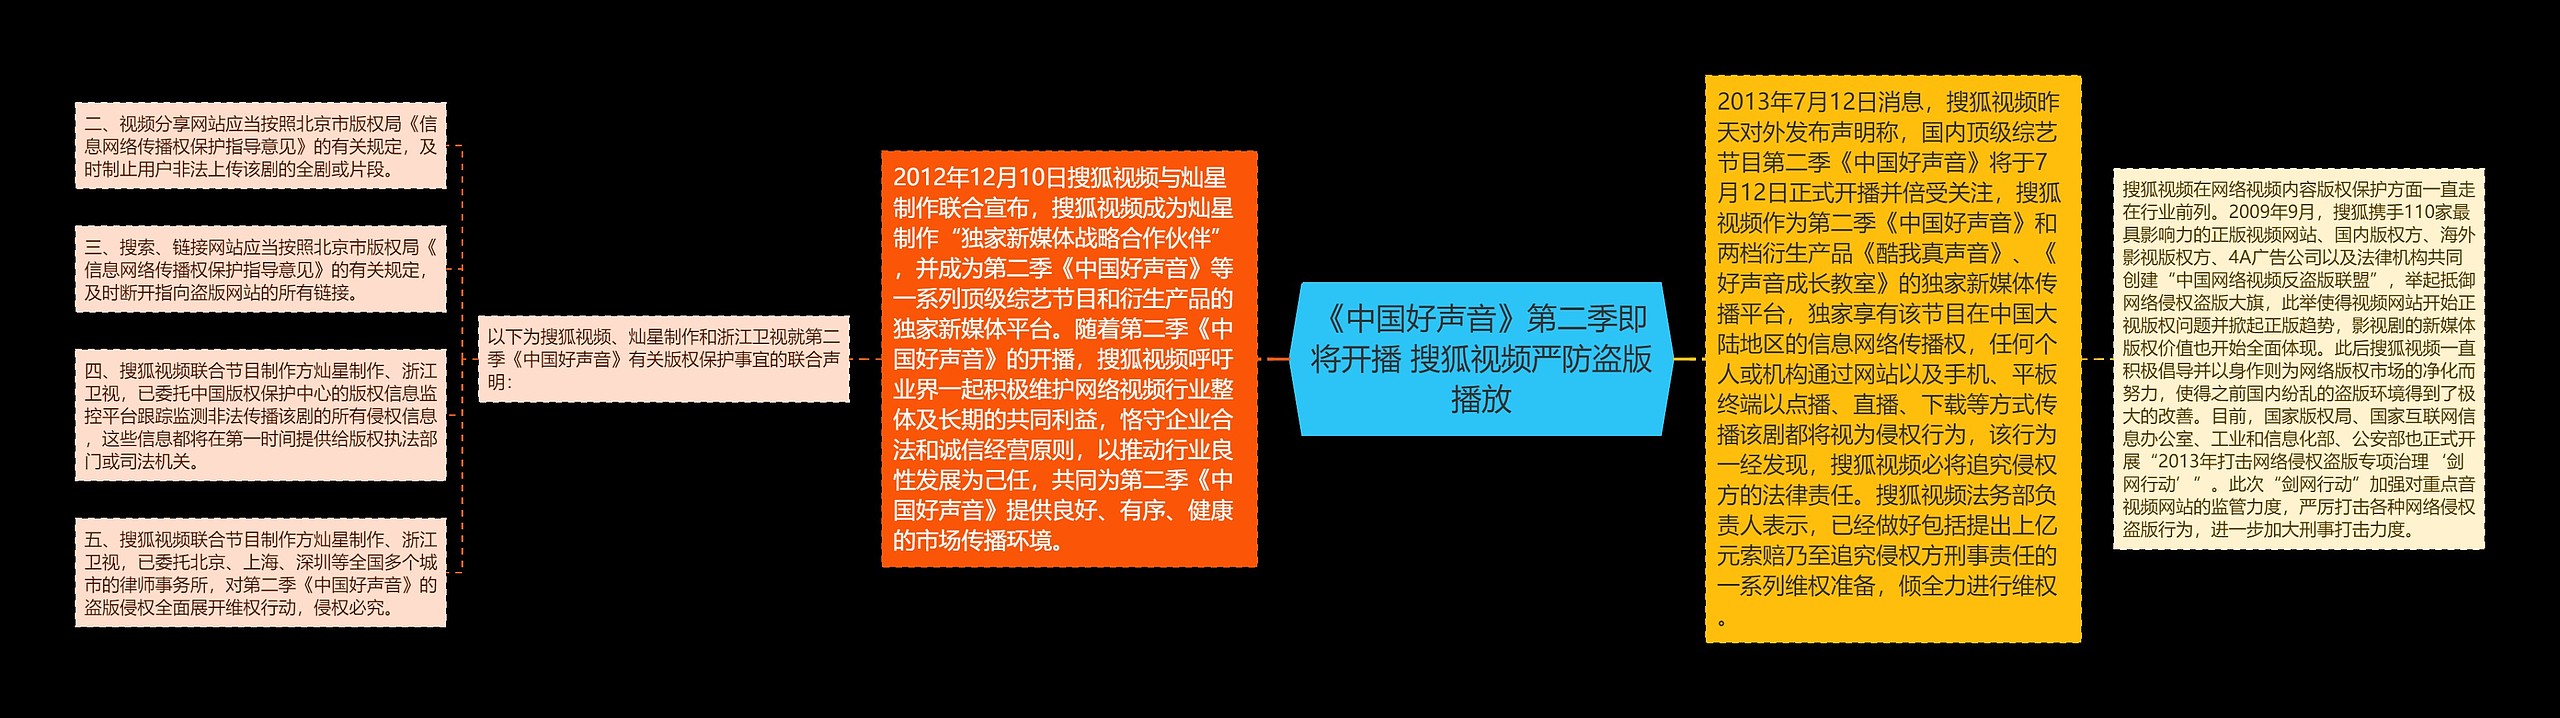 《中国好声音》第二季即将开播 搜狐视频严防盗版播放